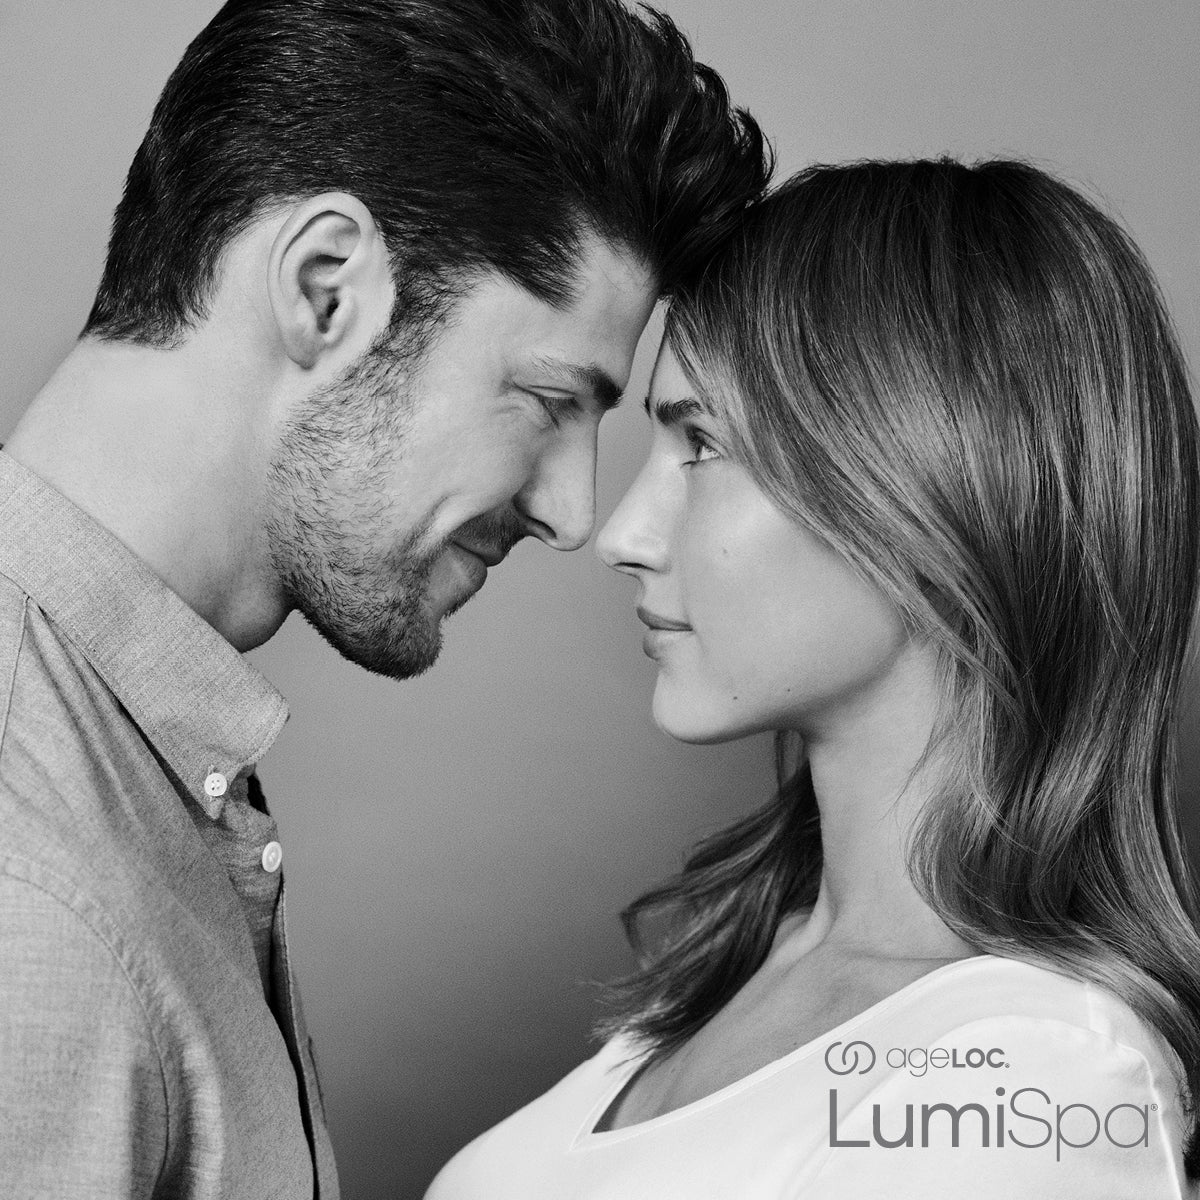 ageLOC LumiSpa Accent & IdealEyes CAPACITÉ 15 ML - Beauty-Privée